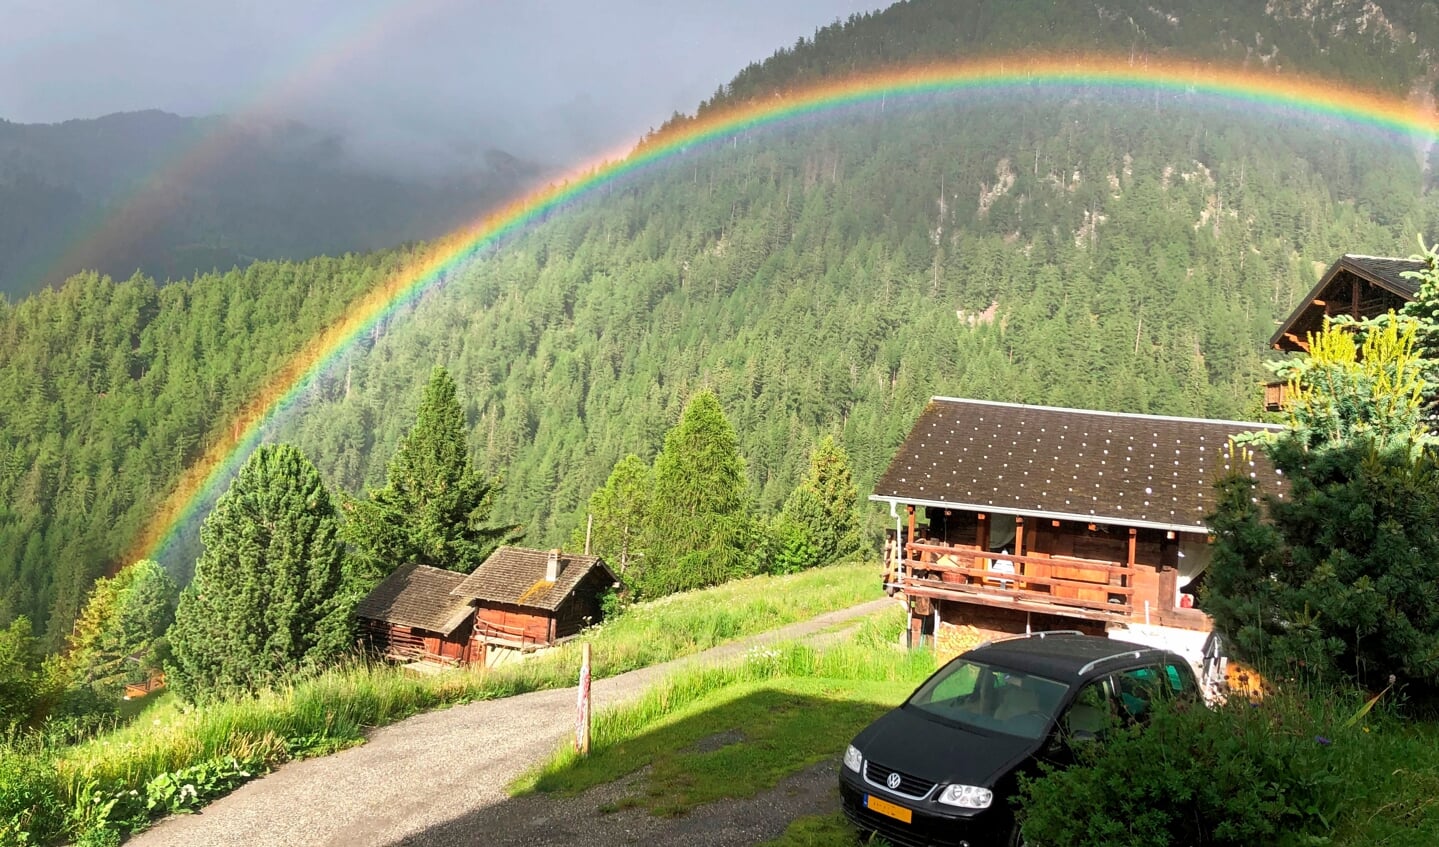 De foto is gemaakt in La Tzoumaz Wallis  Zwitserland

Wij waren daar op bezoek bij een neef om een beetje te helpen met klussen ivm ziekte. Een prachtige zonnige dag werd afgesloten met een fikse bui die eindigde met deze adembenemende dubbele regenboog.